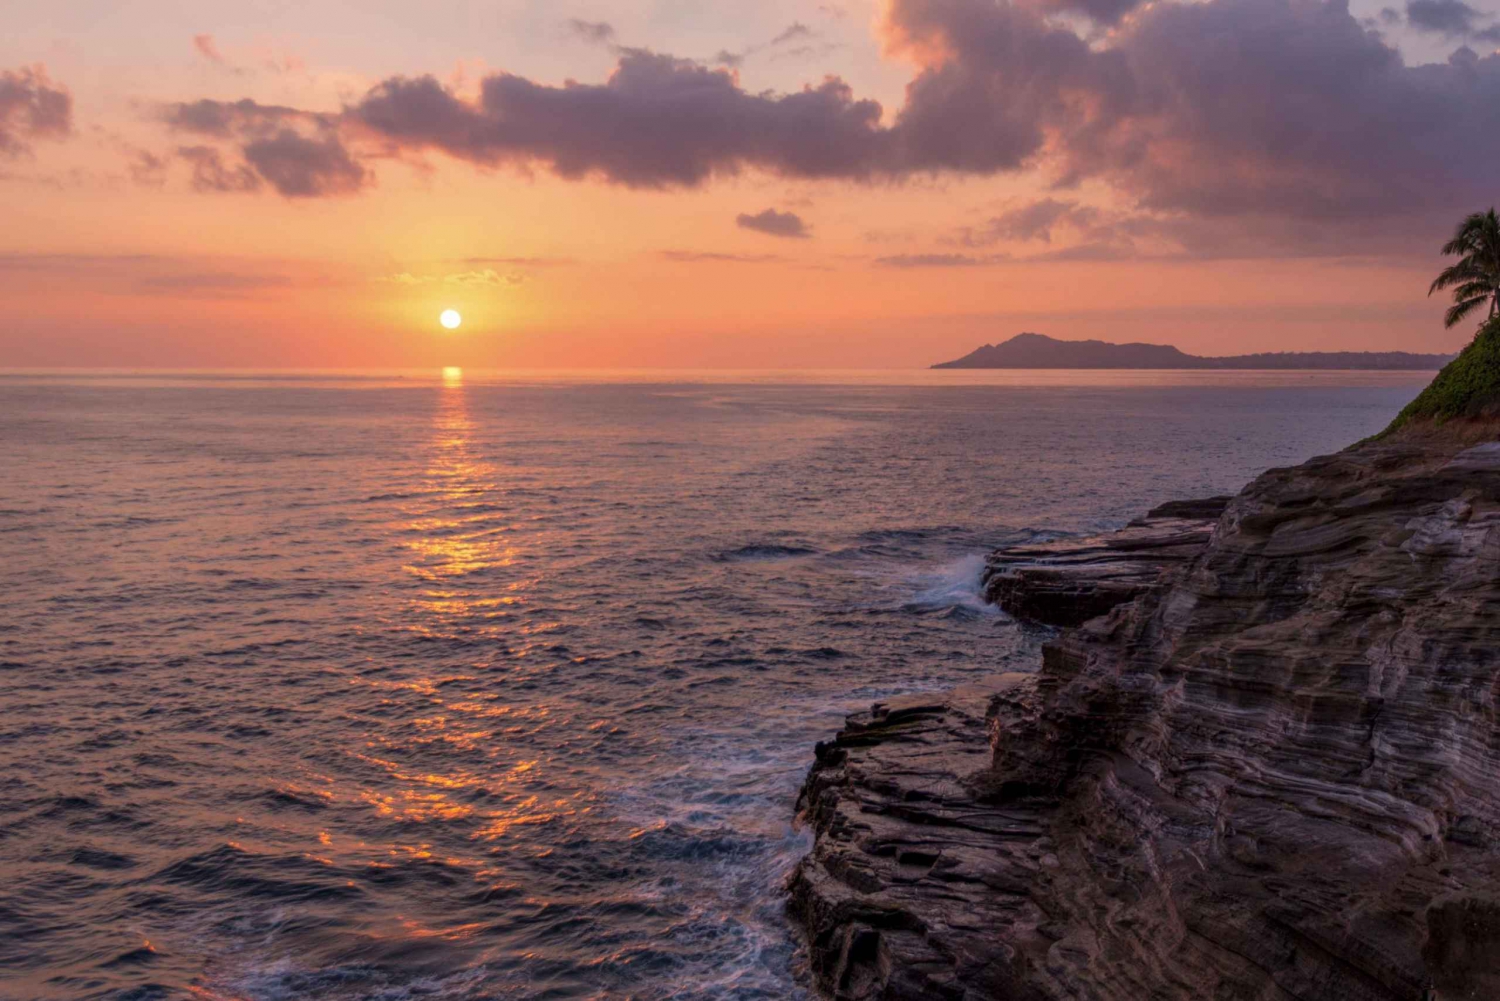 Oahu: Fotograferingstur i solnedgången med professionell fotoguide